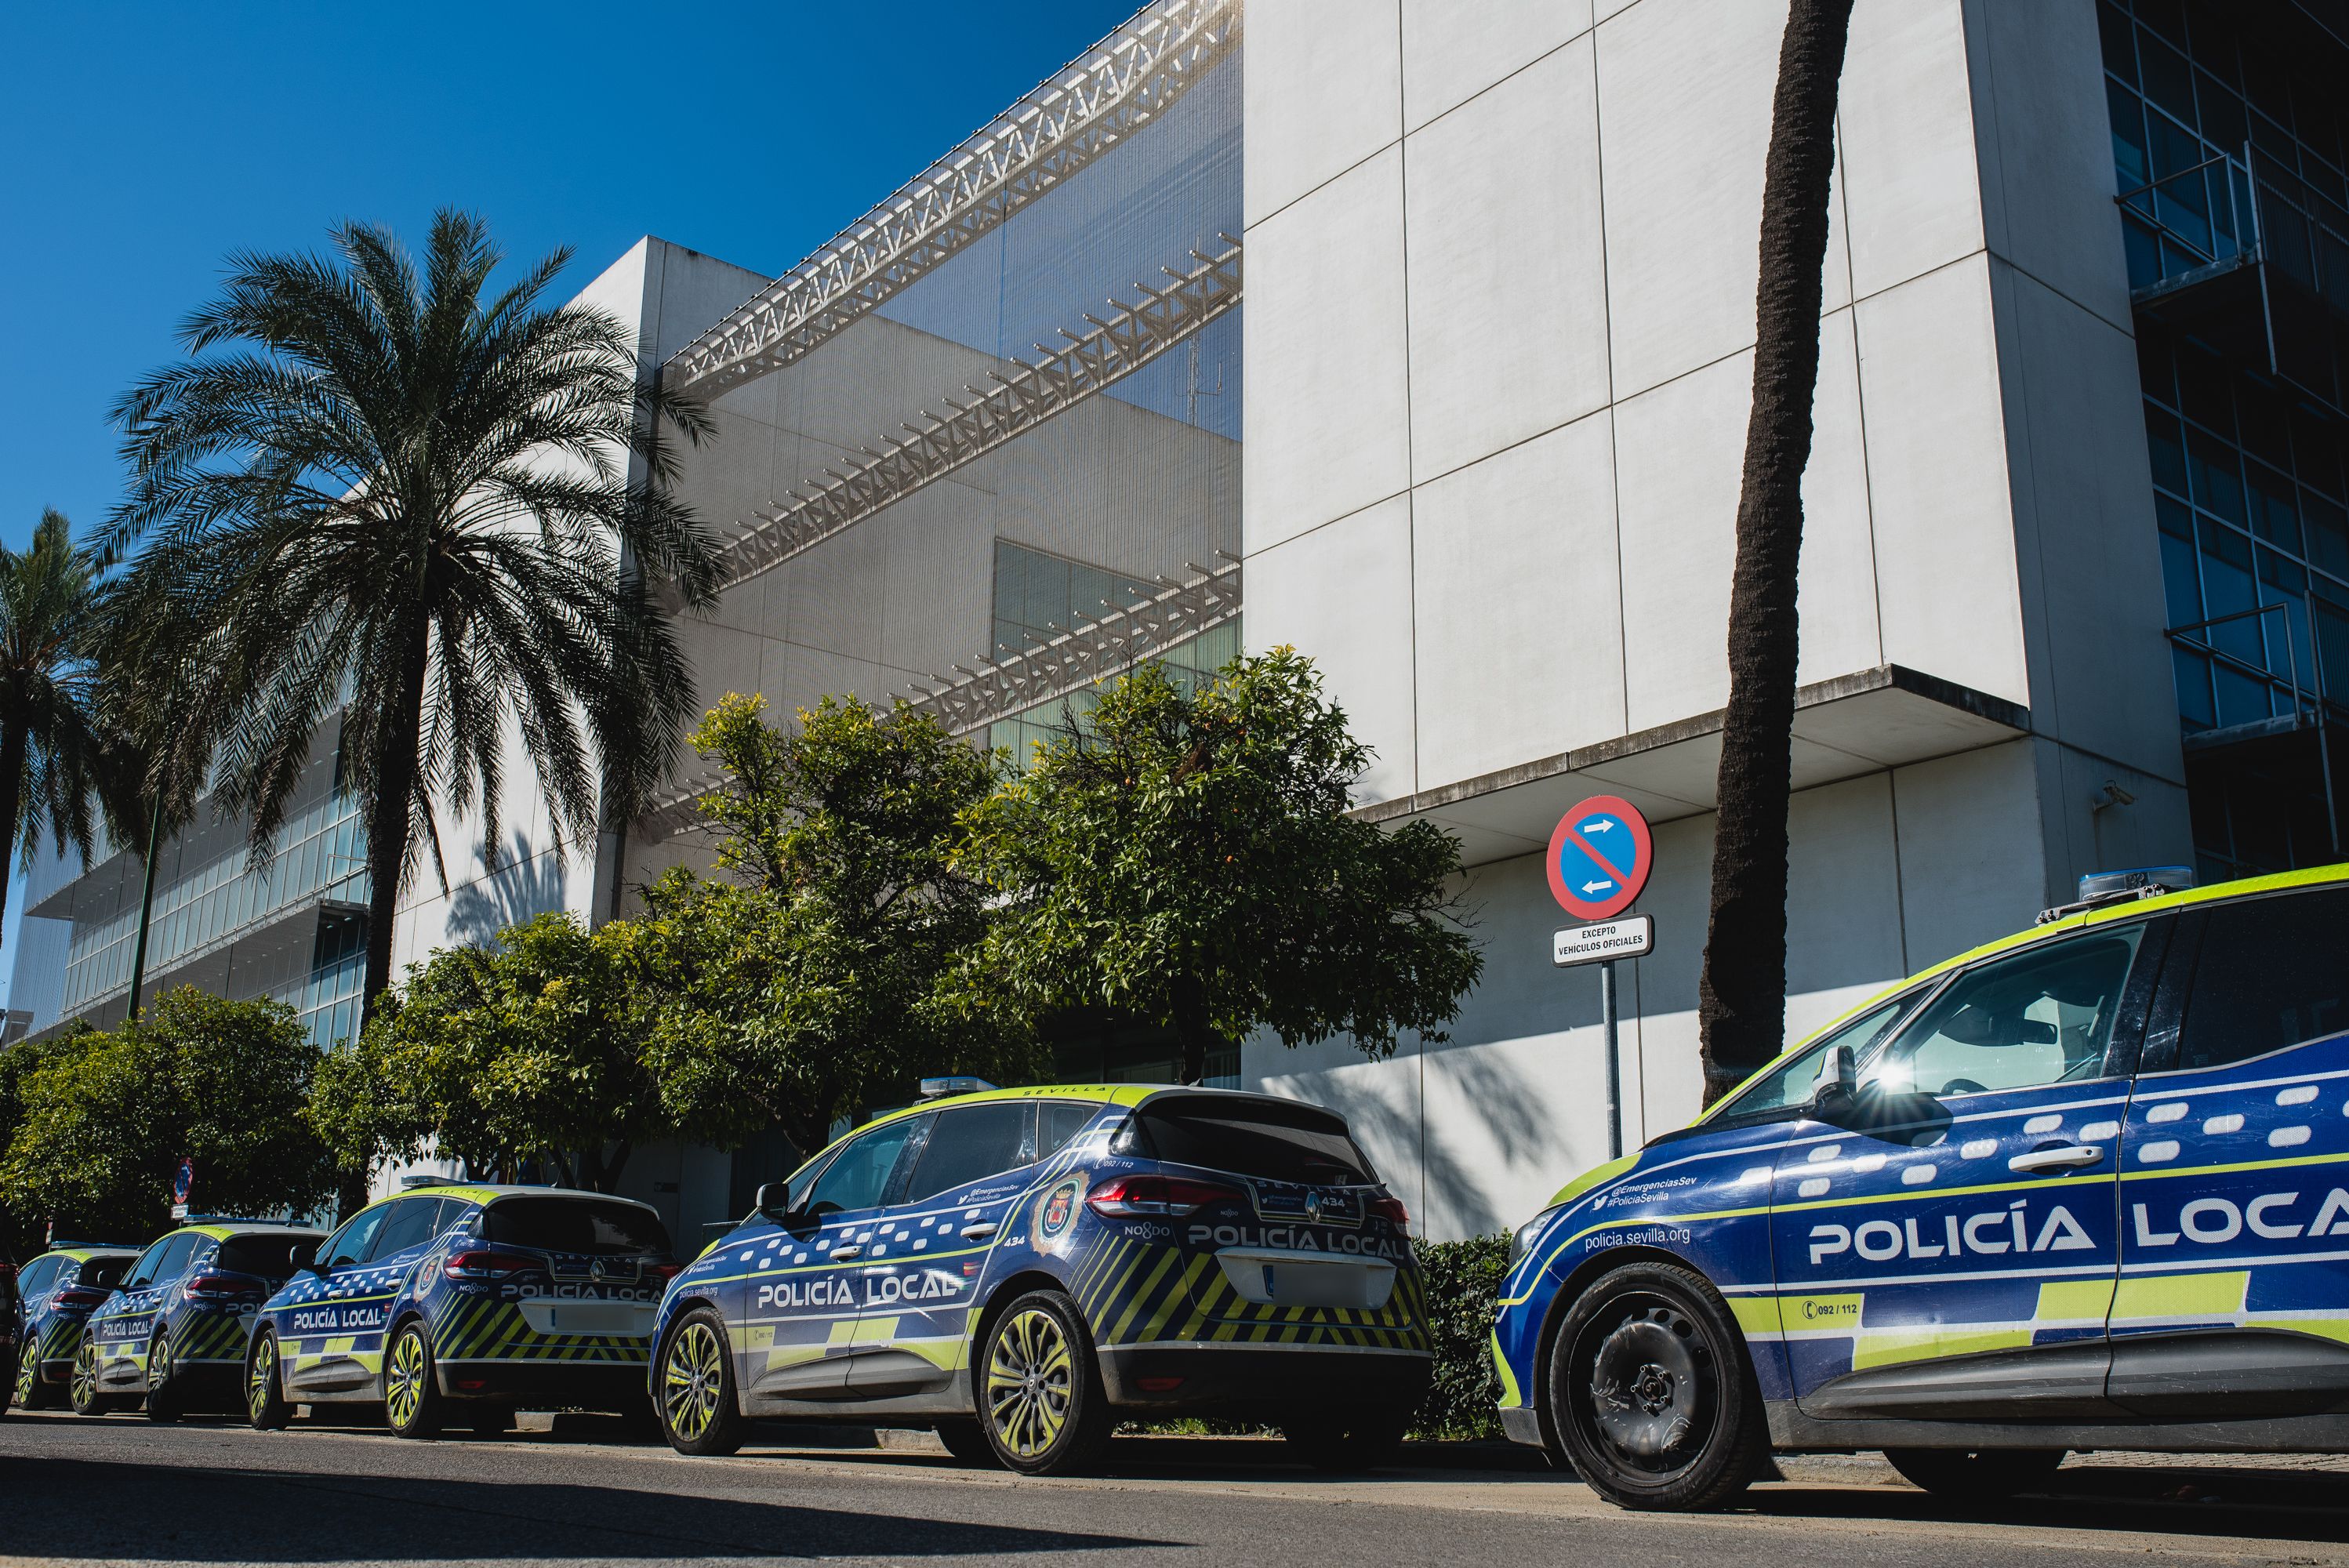 La Comisaría de la Policía Local de Sevilla en la Ranilla, en una imagen reciente.